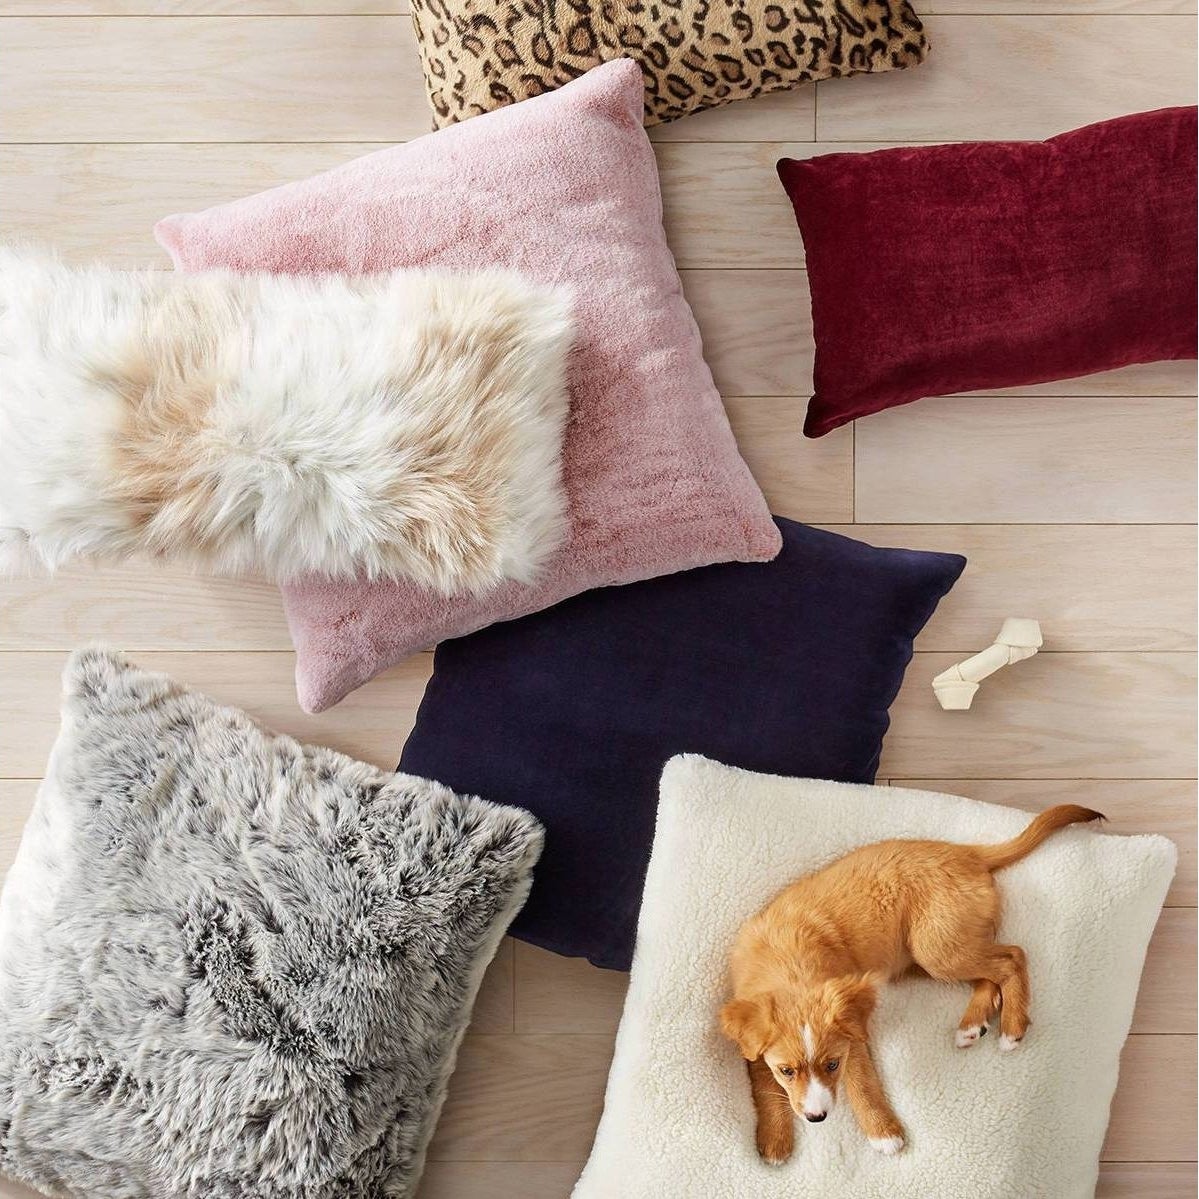 Colorful faux fur pillows